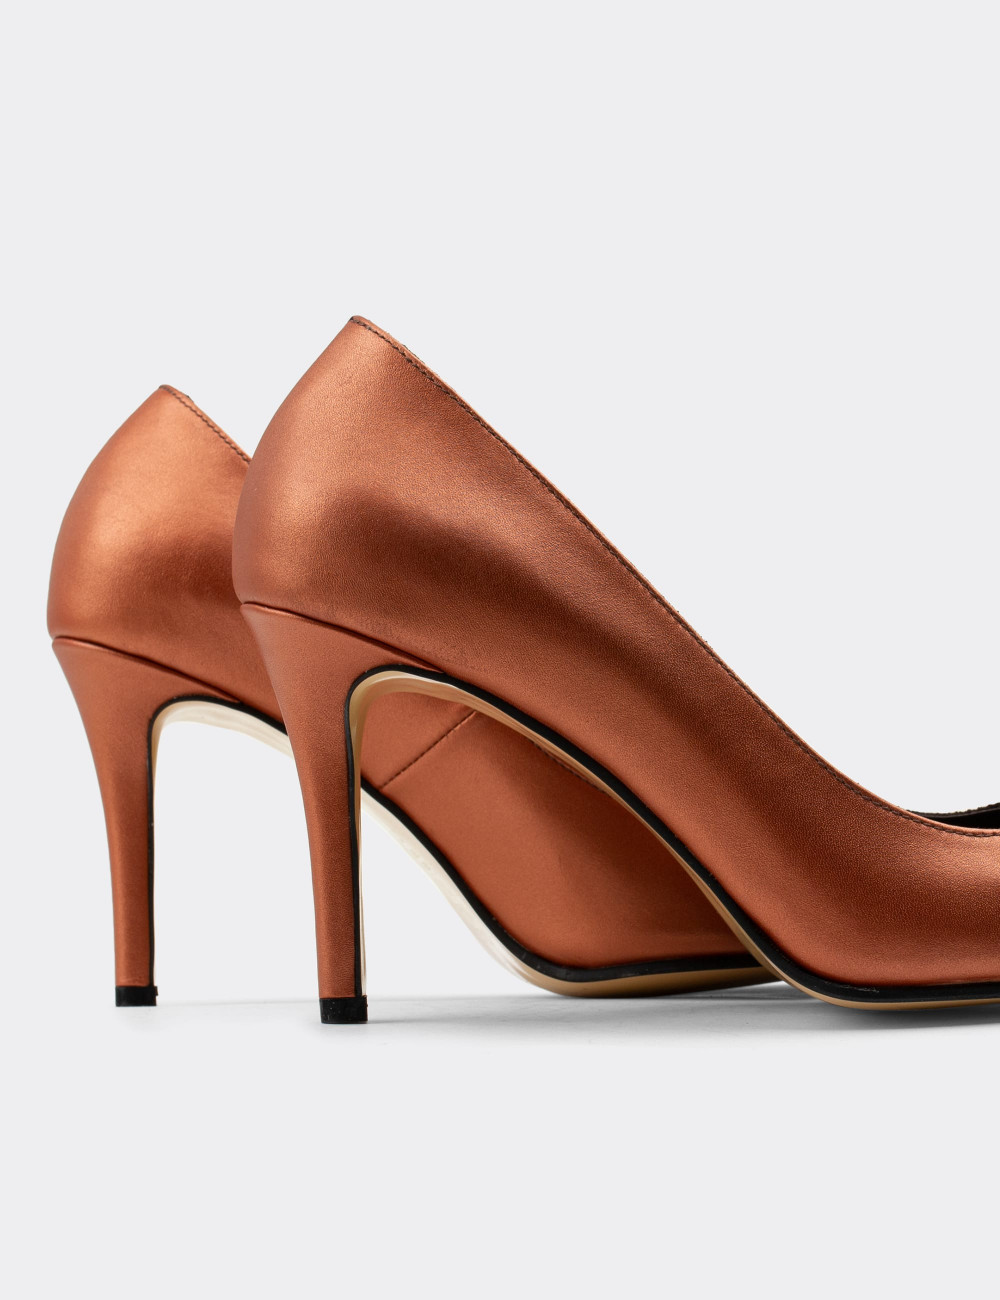 Hakiki Deri Bakır Rengi Stiletto Kadın Topuklu Ayakkabı - D2029ZBKRM01